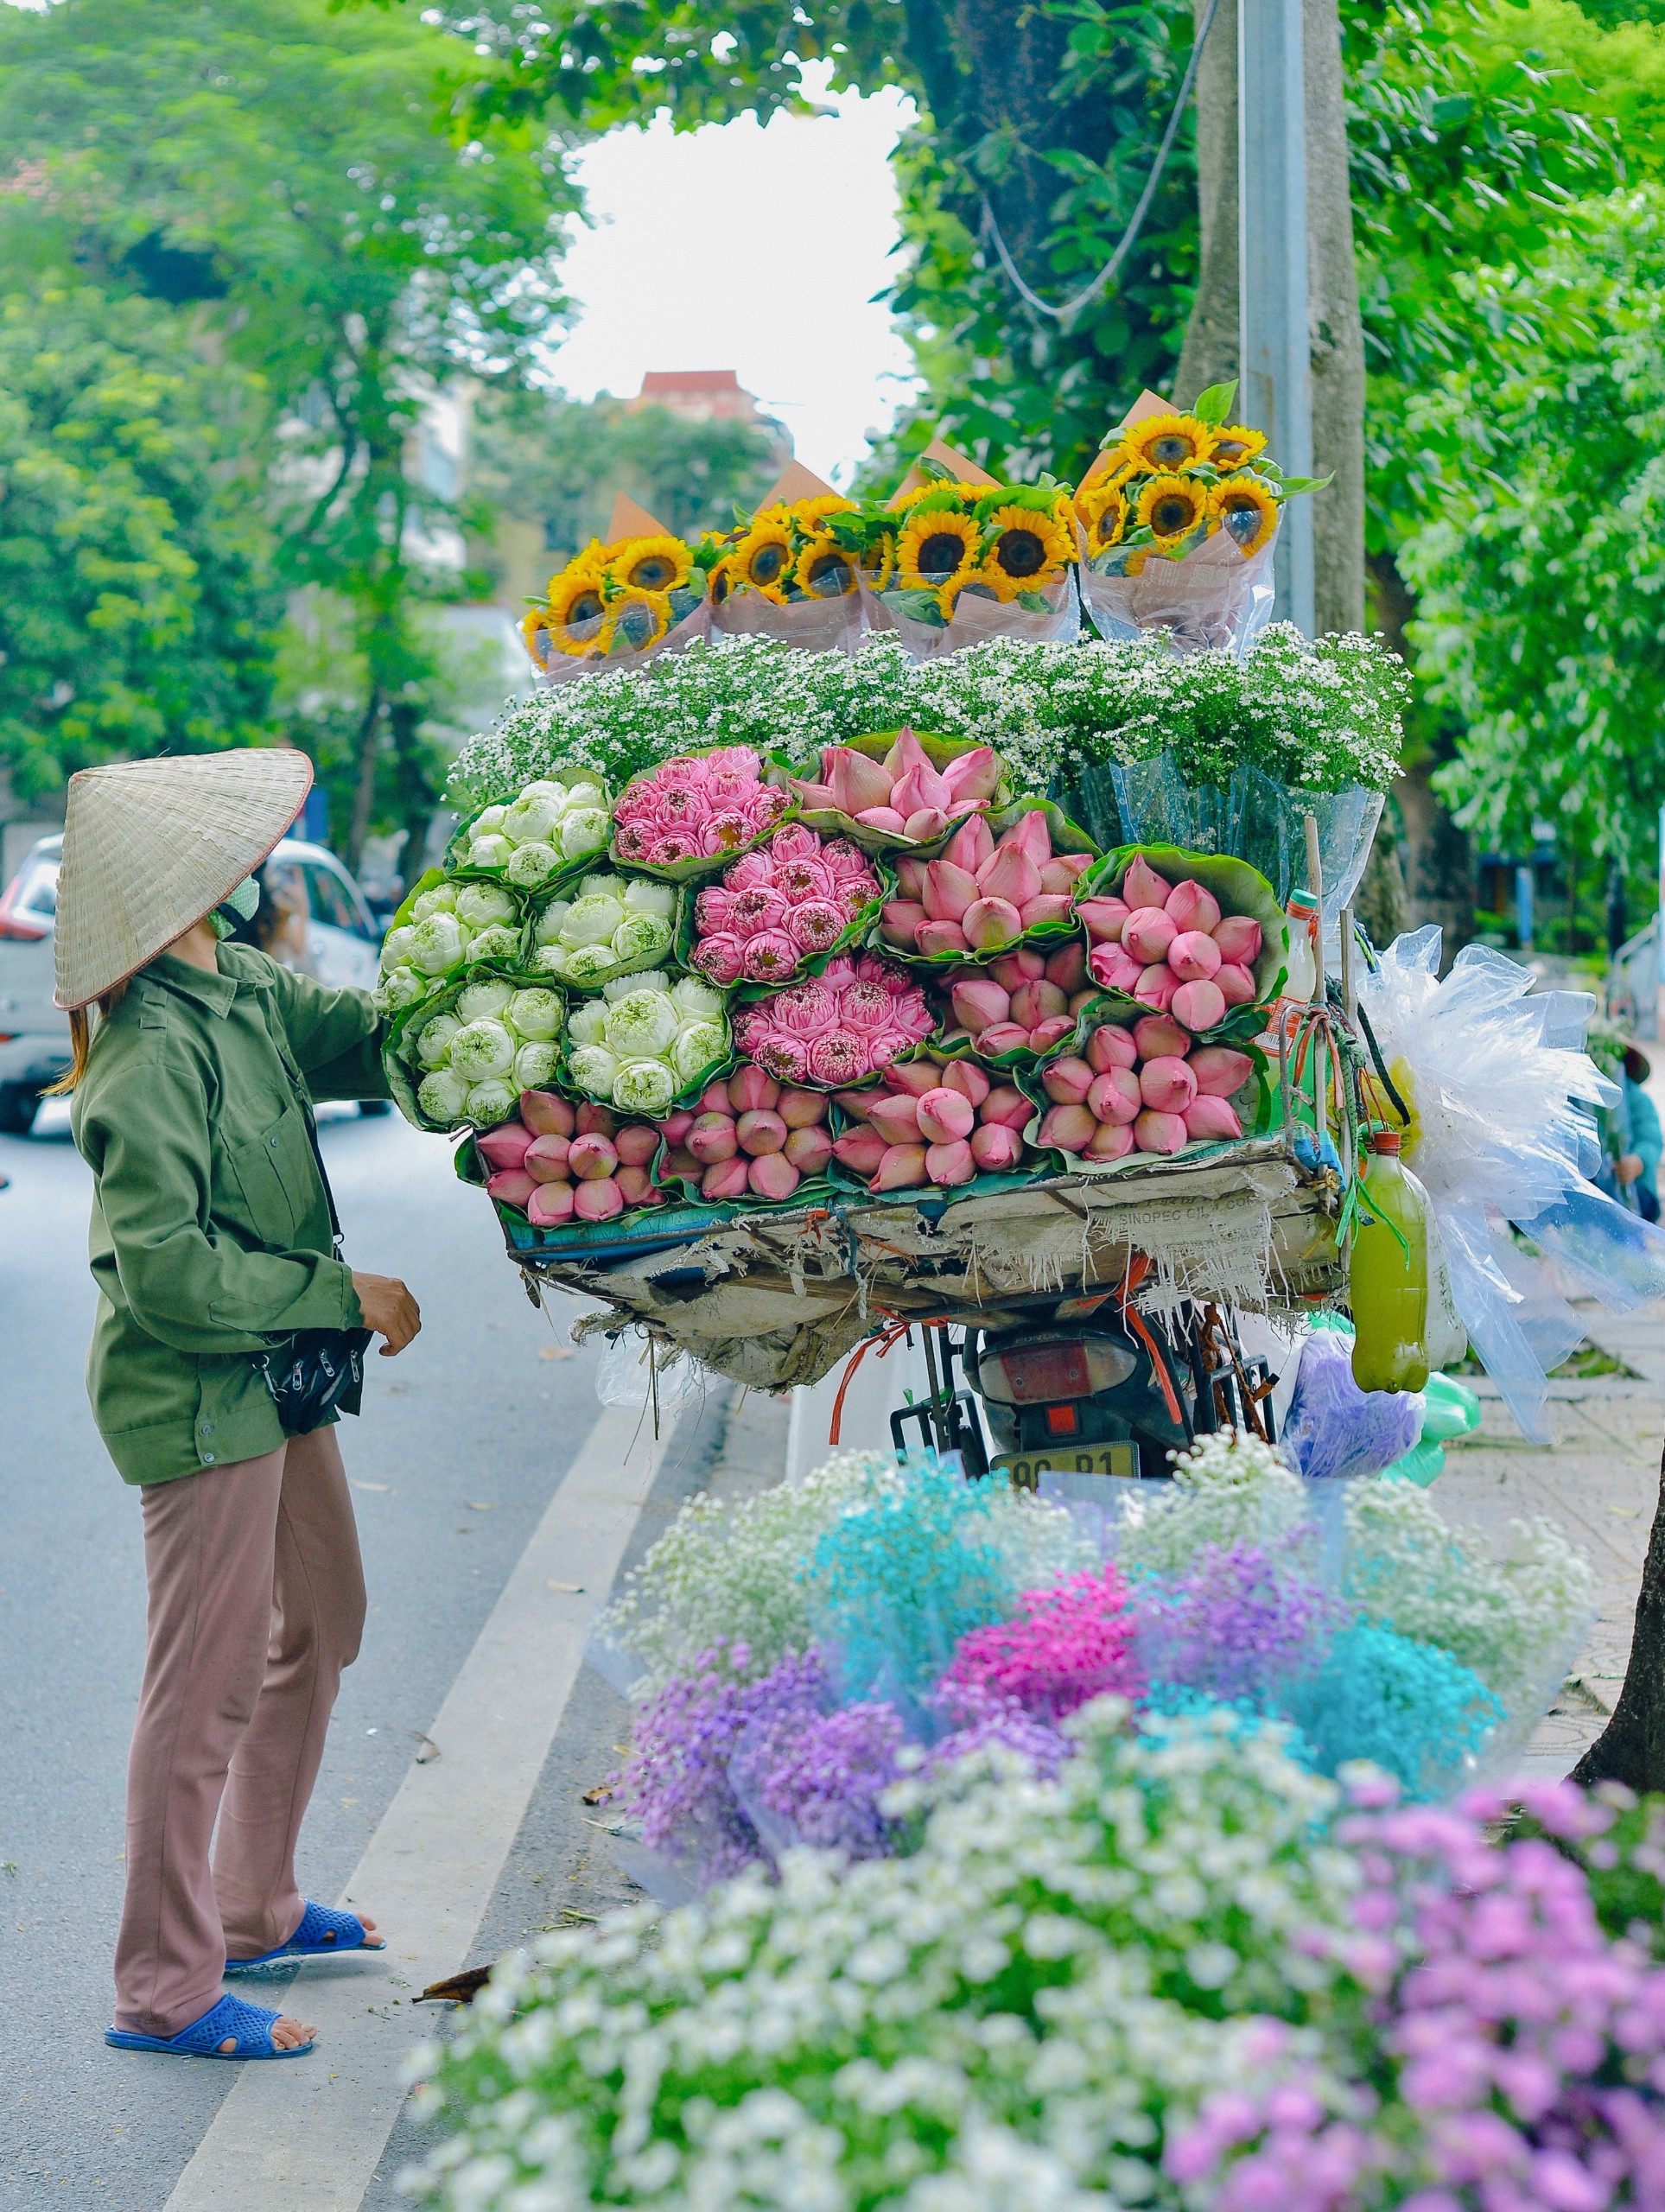 Các loại xe hàng hoa dưới phố mang đến một khung cảnh độc đáo và đầy màu sắc cho cuộc sống đô thị. Hãy cùng khám phá những bức ảnh về xe hàng hoa dưới phố để cảm nhận được vẻ đẹp của những chiếc xe này và đời sống hiện đại của thành phố.